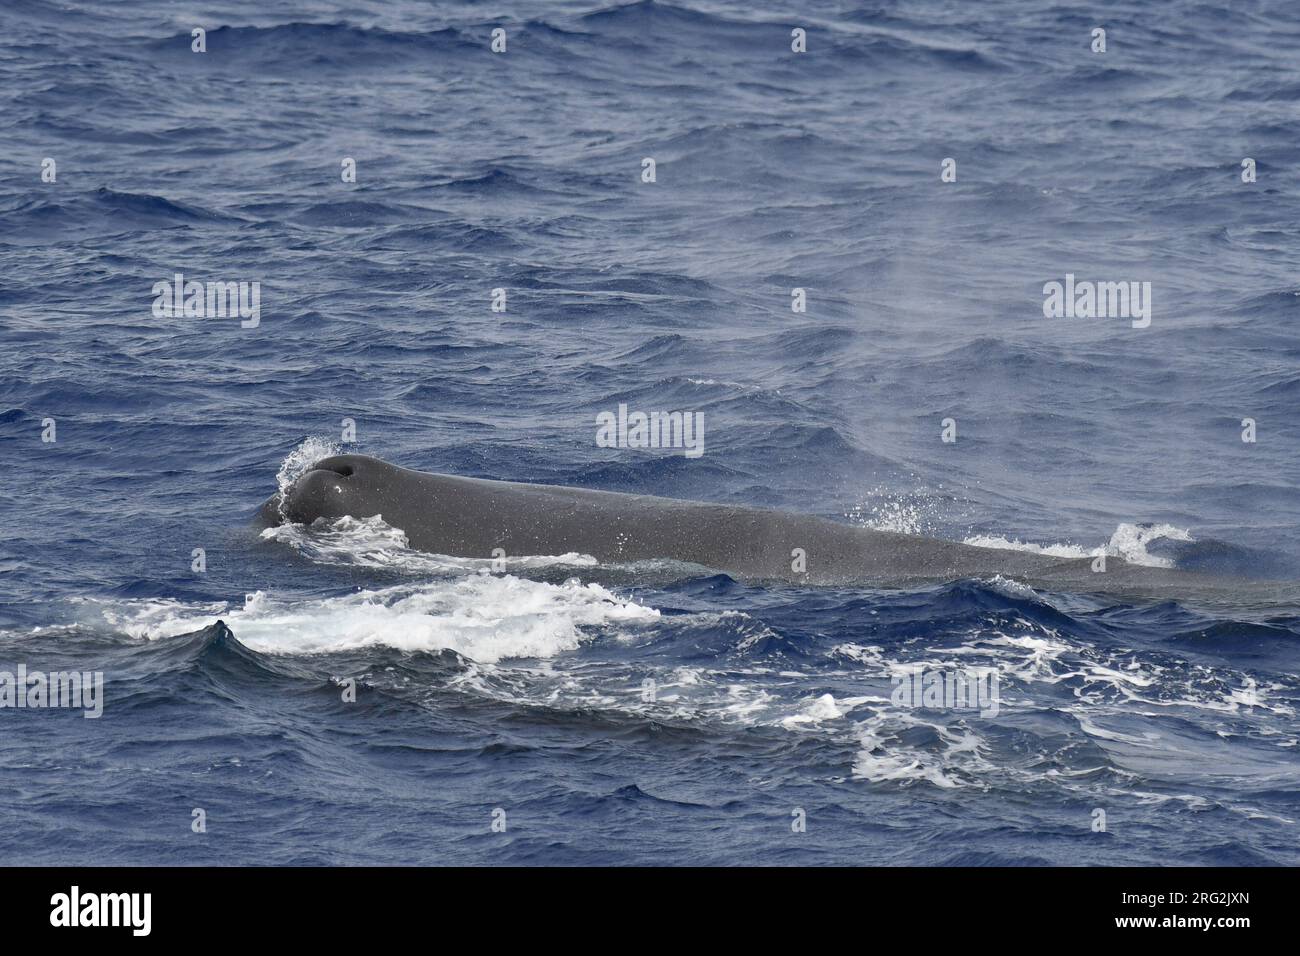 Spermatozoïde Whale (Physeter macrocephalus) nageant dans les eaux au large de l’île Sainte-Hélène, dans l’océan Atlantique central. Banque D'Images